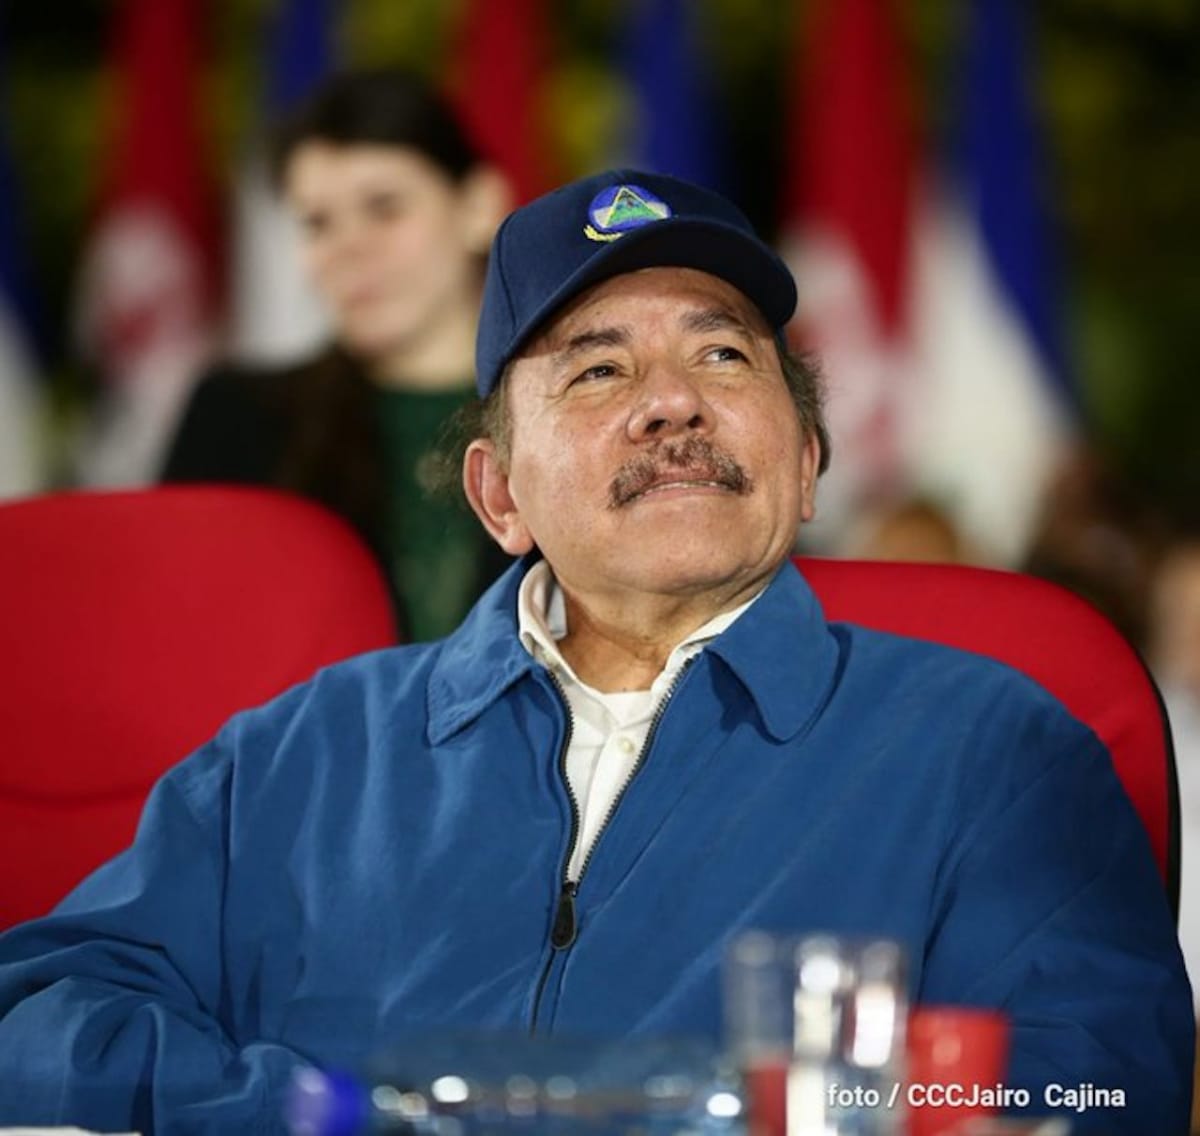 El 68.9% de los nicaragüenses aprueba el trabajo realizado por el Presidente Daniel Ortega, según el ultimo sondeo de M&R Consultores